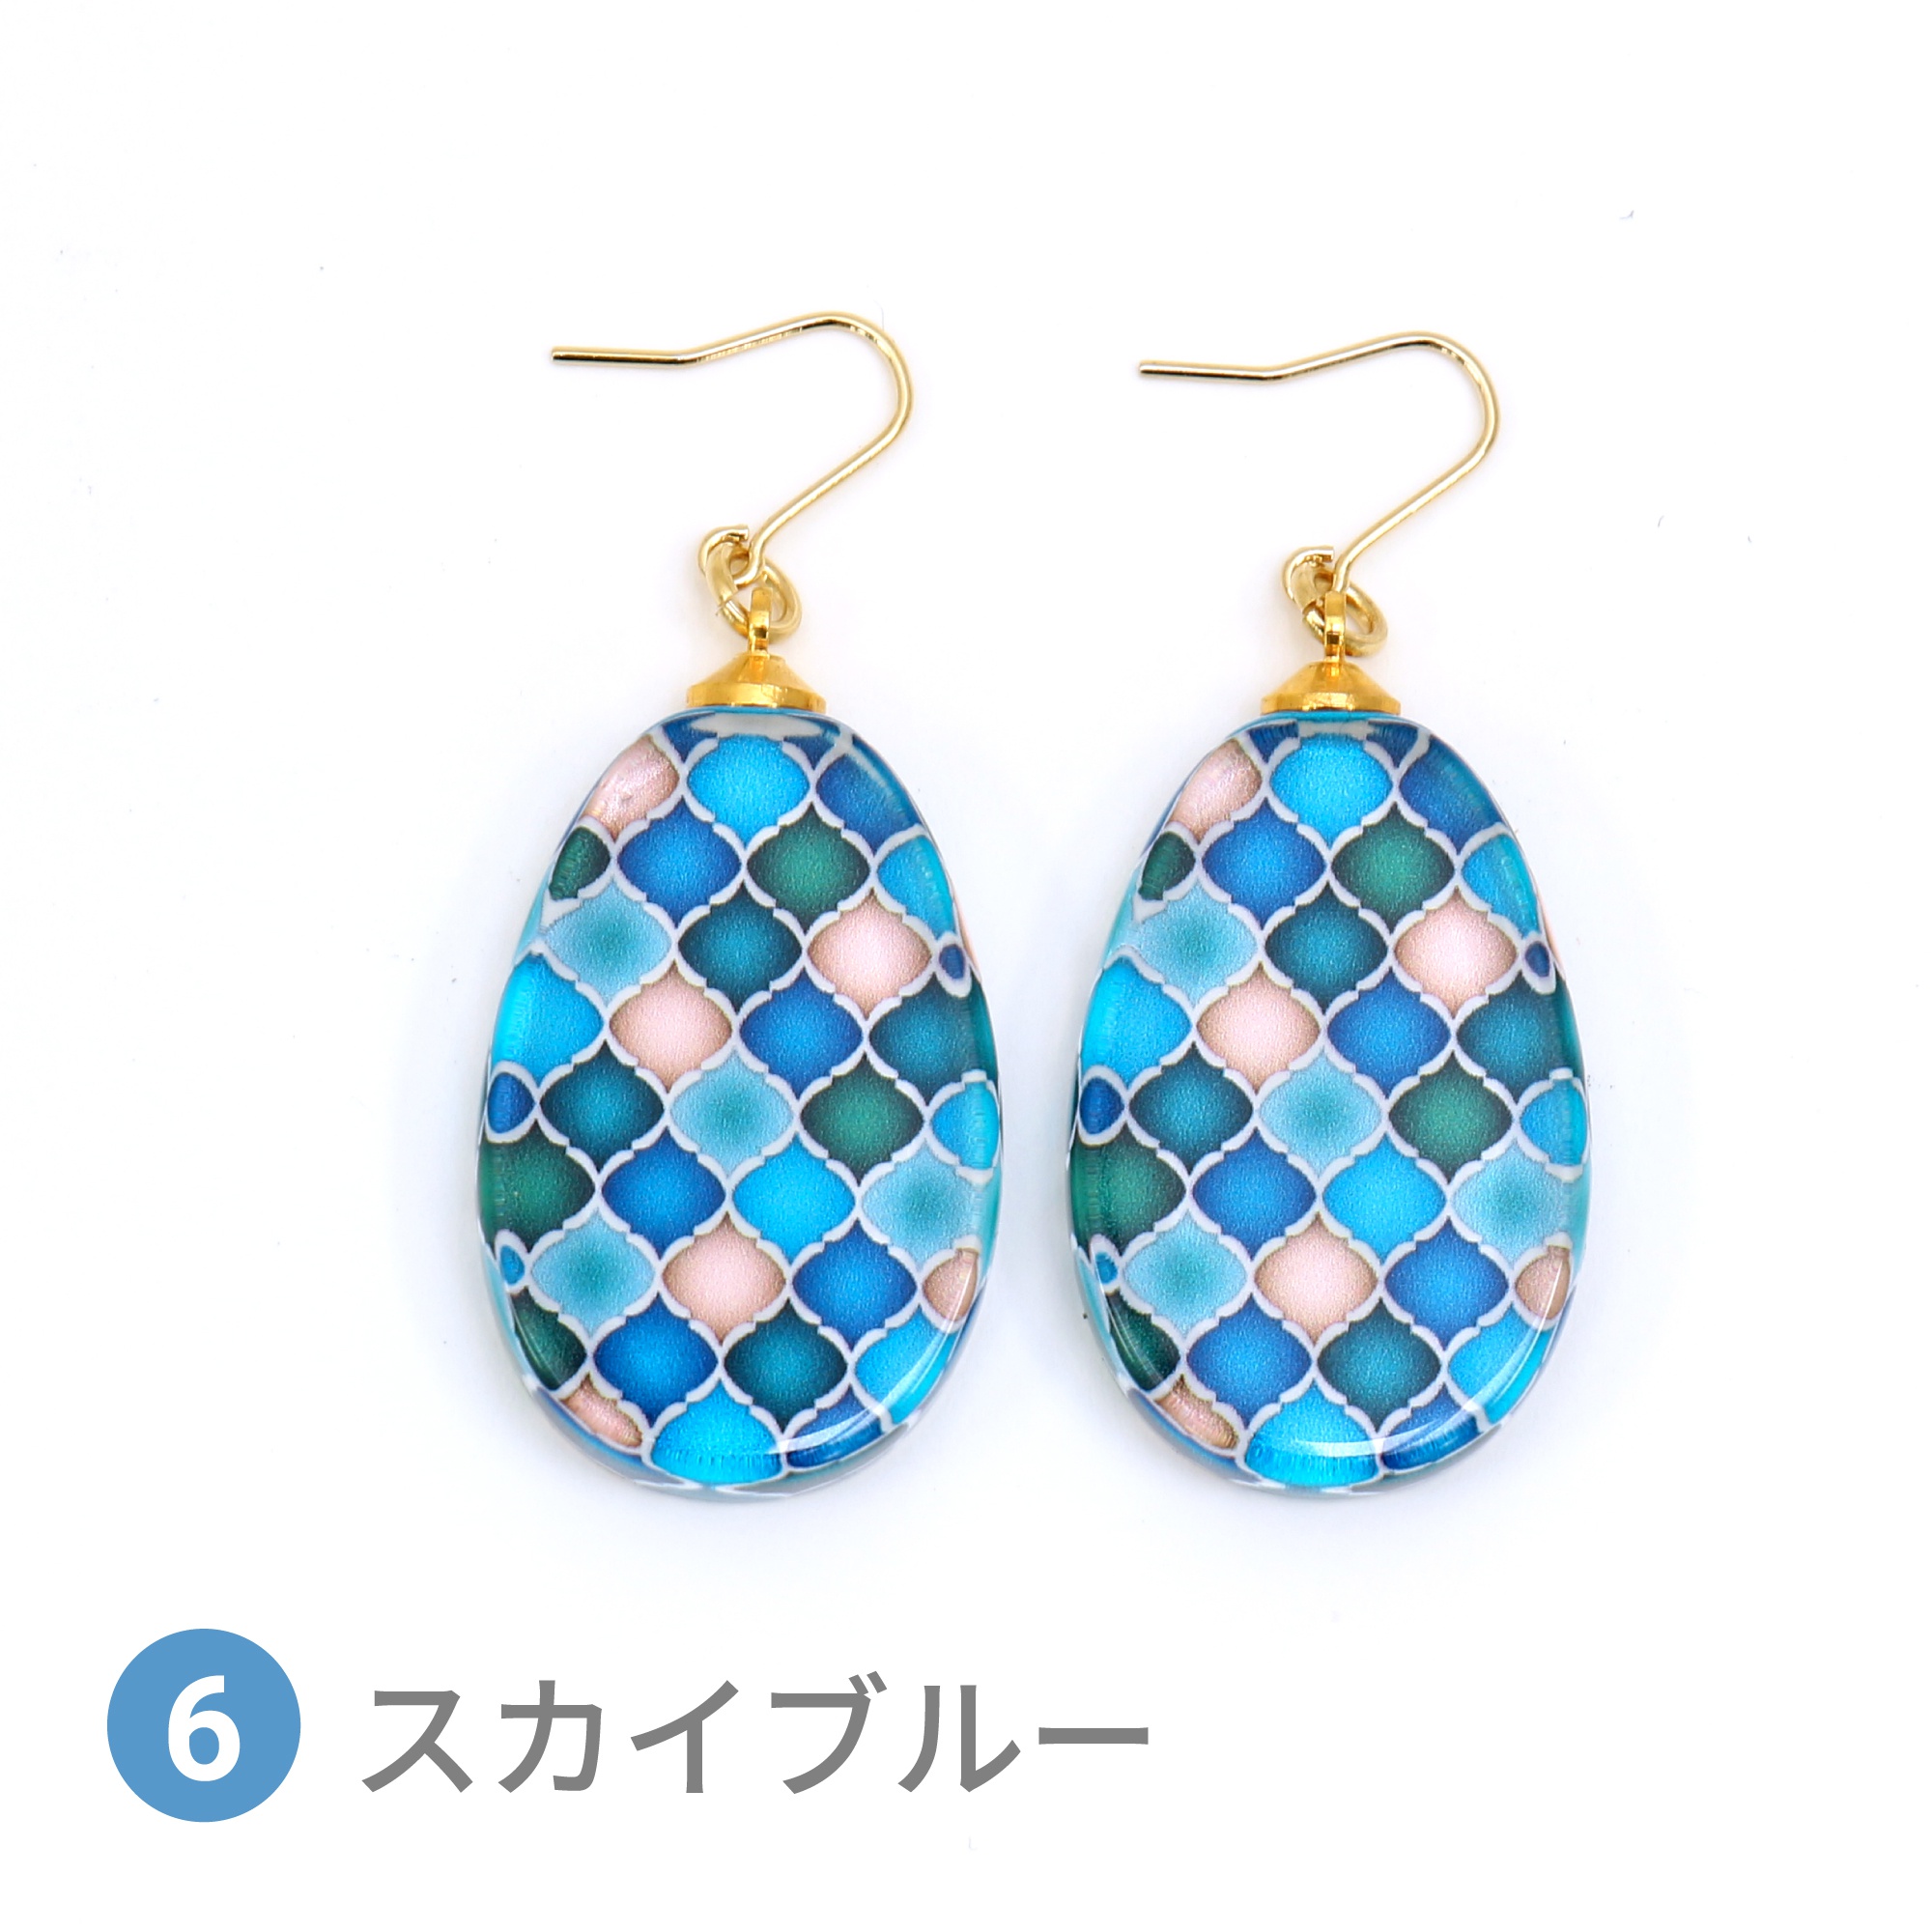 Glass accessories Pierced Earring MOROCCAN skyblue drop shape